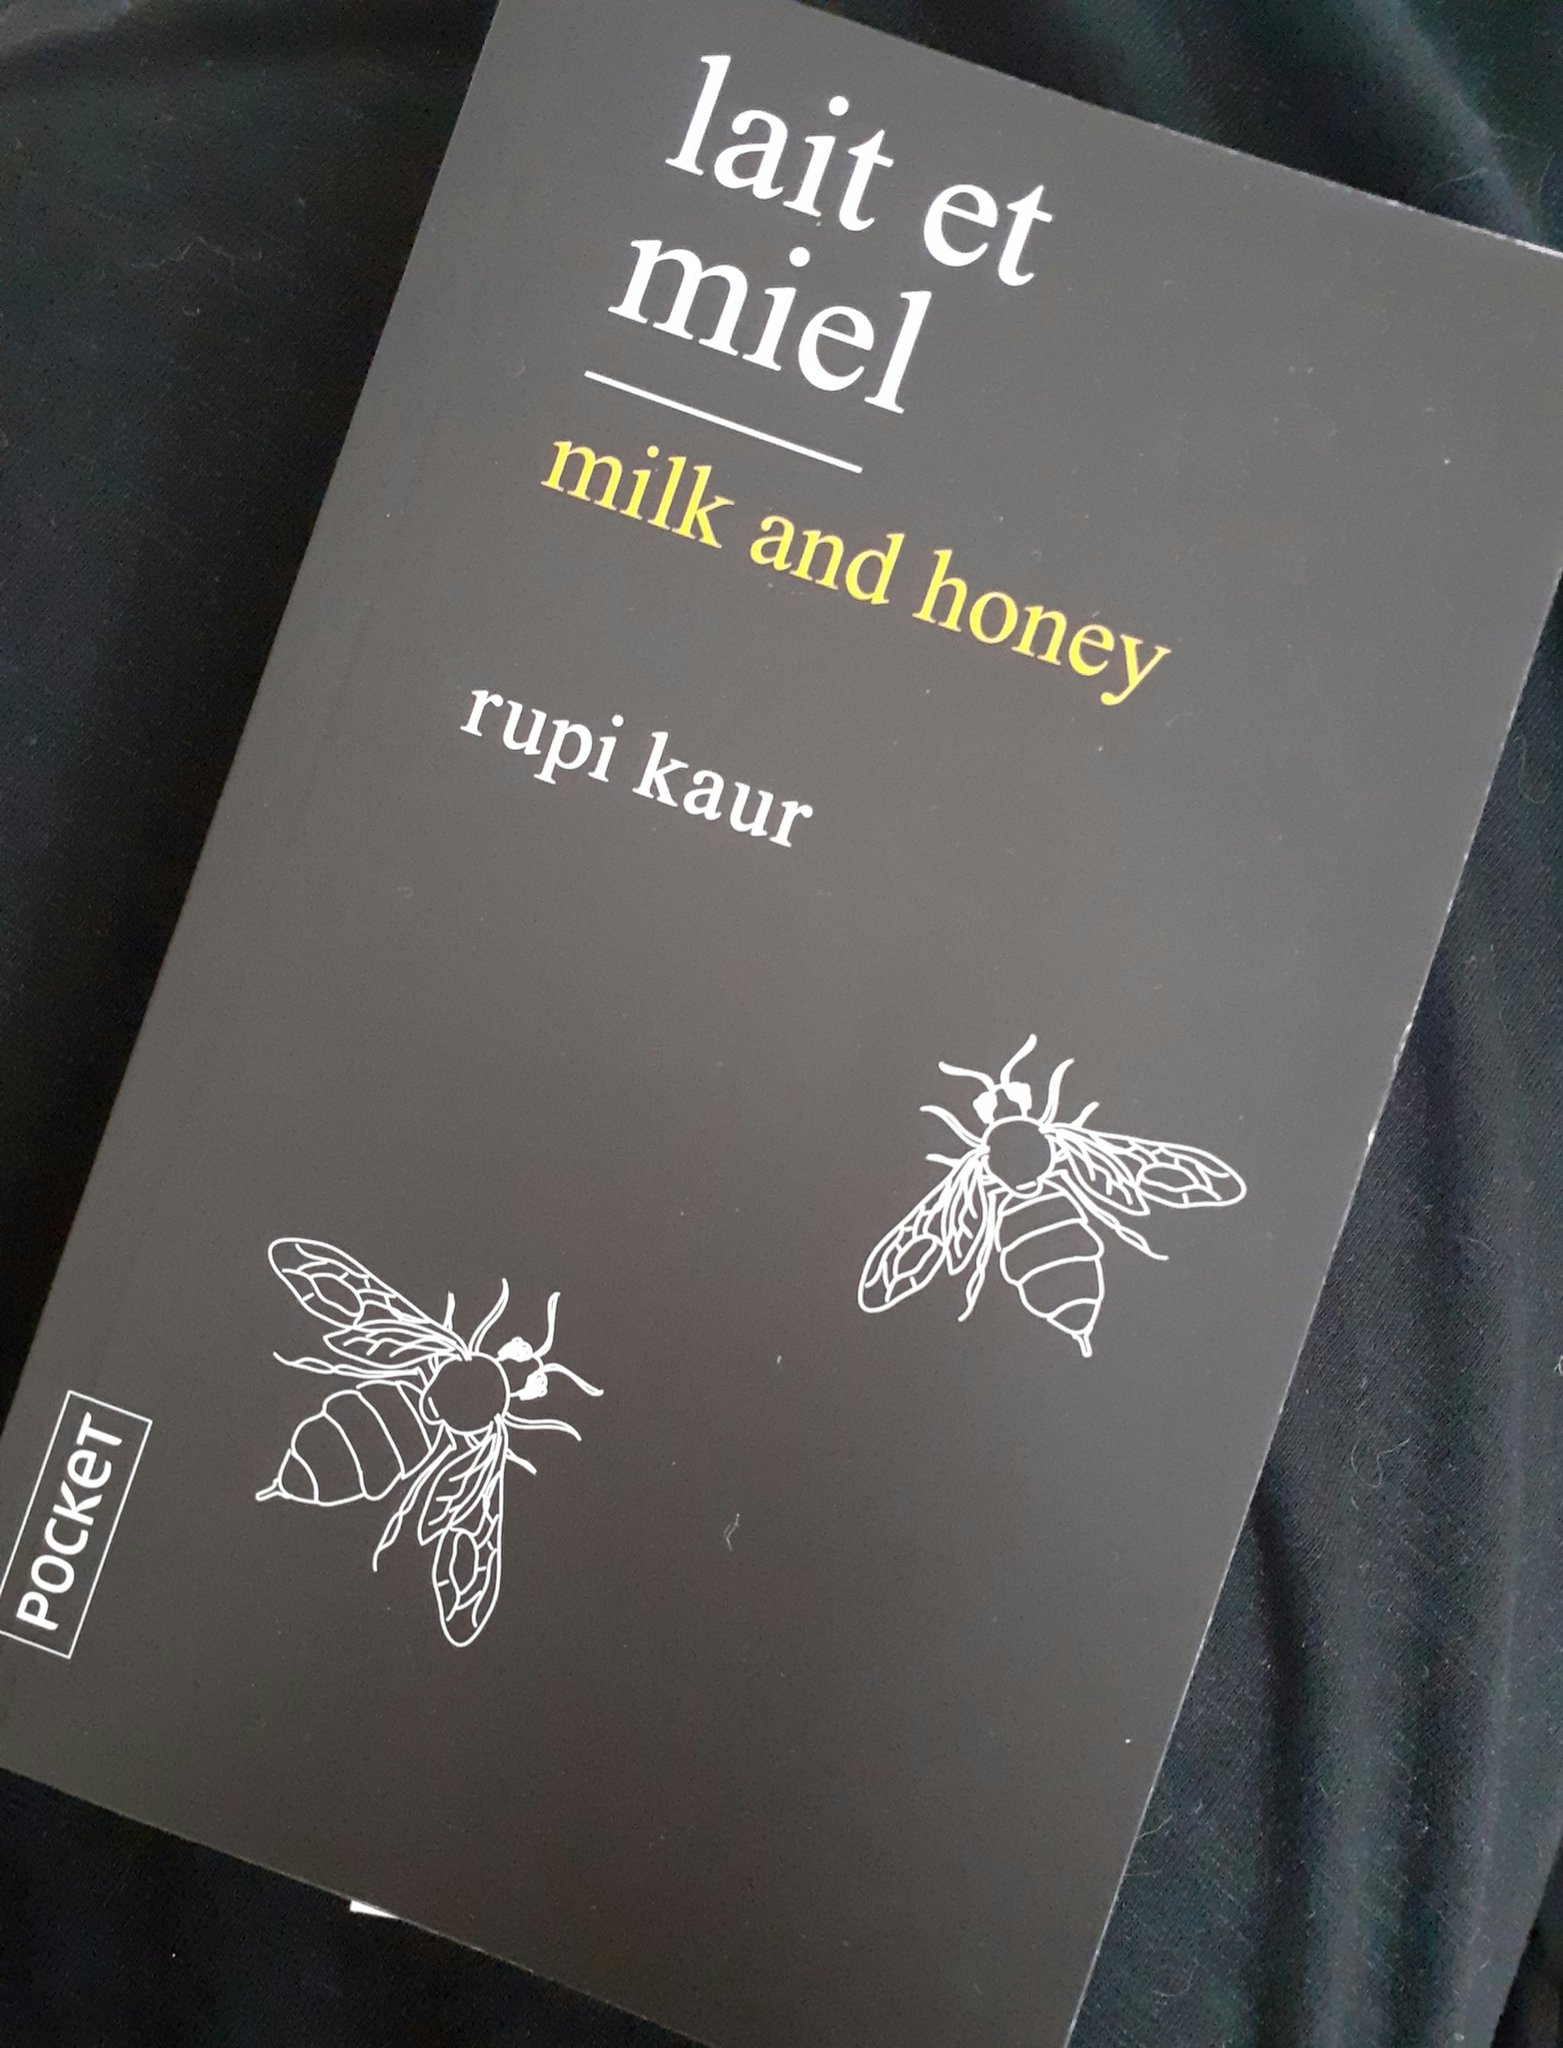 lait et miel - milk and honey - Rupi Kaur